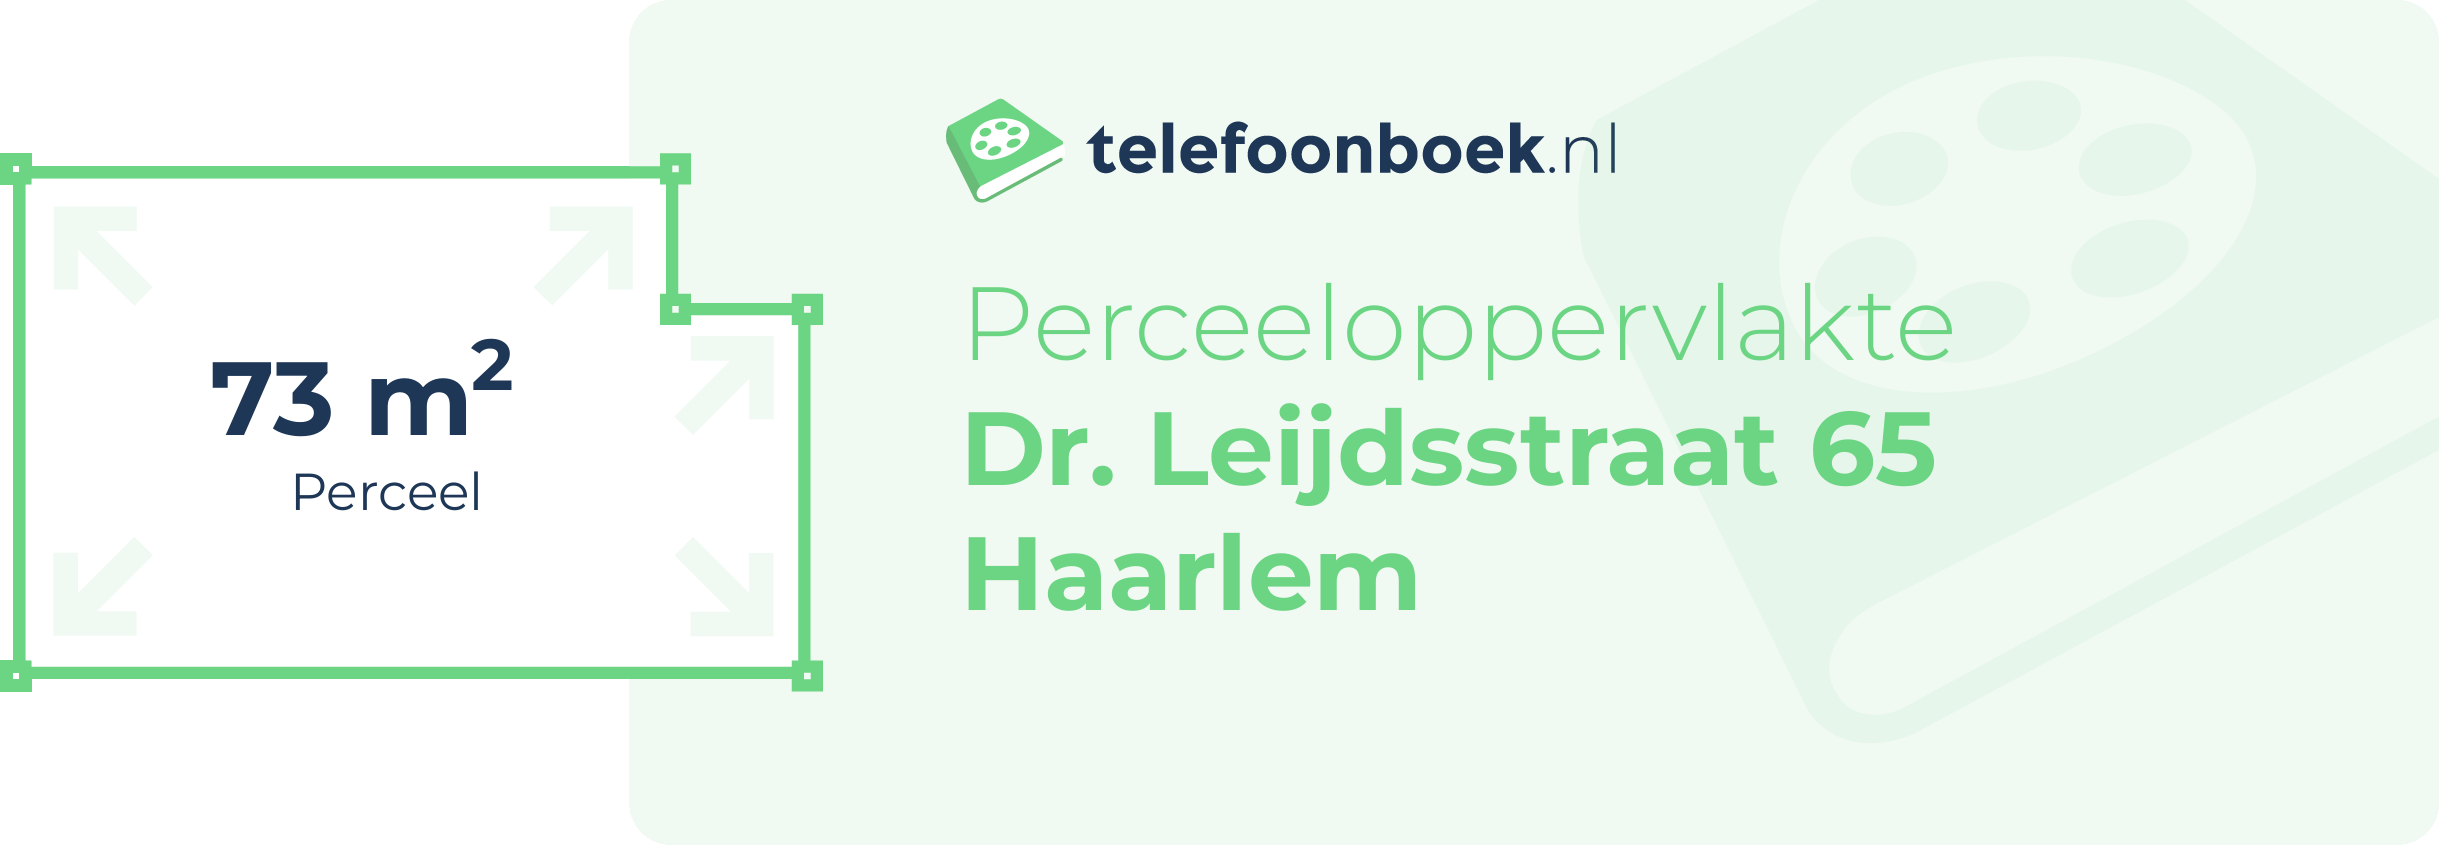 Perceeloppervlakte Dr. Leijdsstraat 65 Haarlem